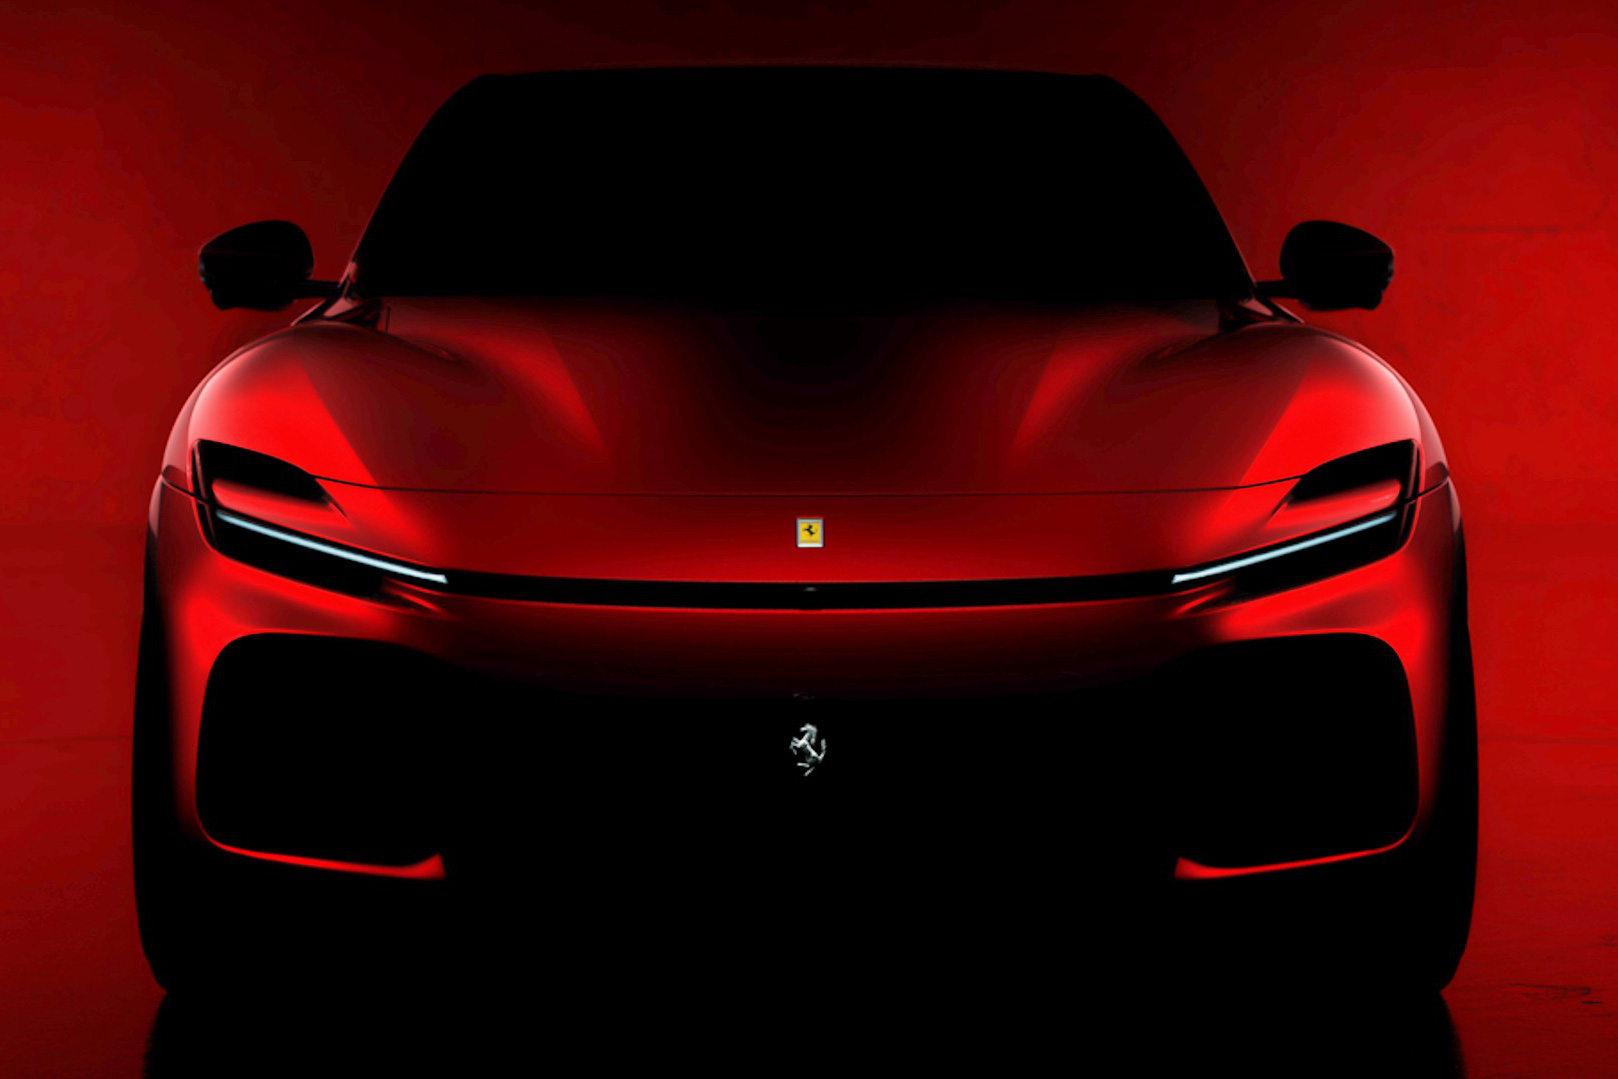 Ferrari Purosangue chính thức lộ diện - Siêu SUV cạnh tranh sòng phẳng Lamborghini Urus